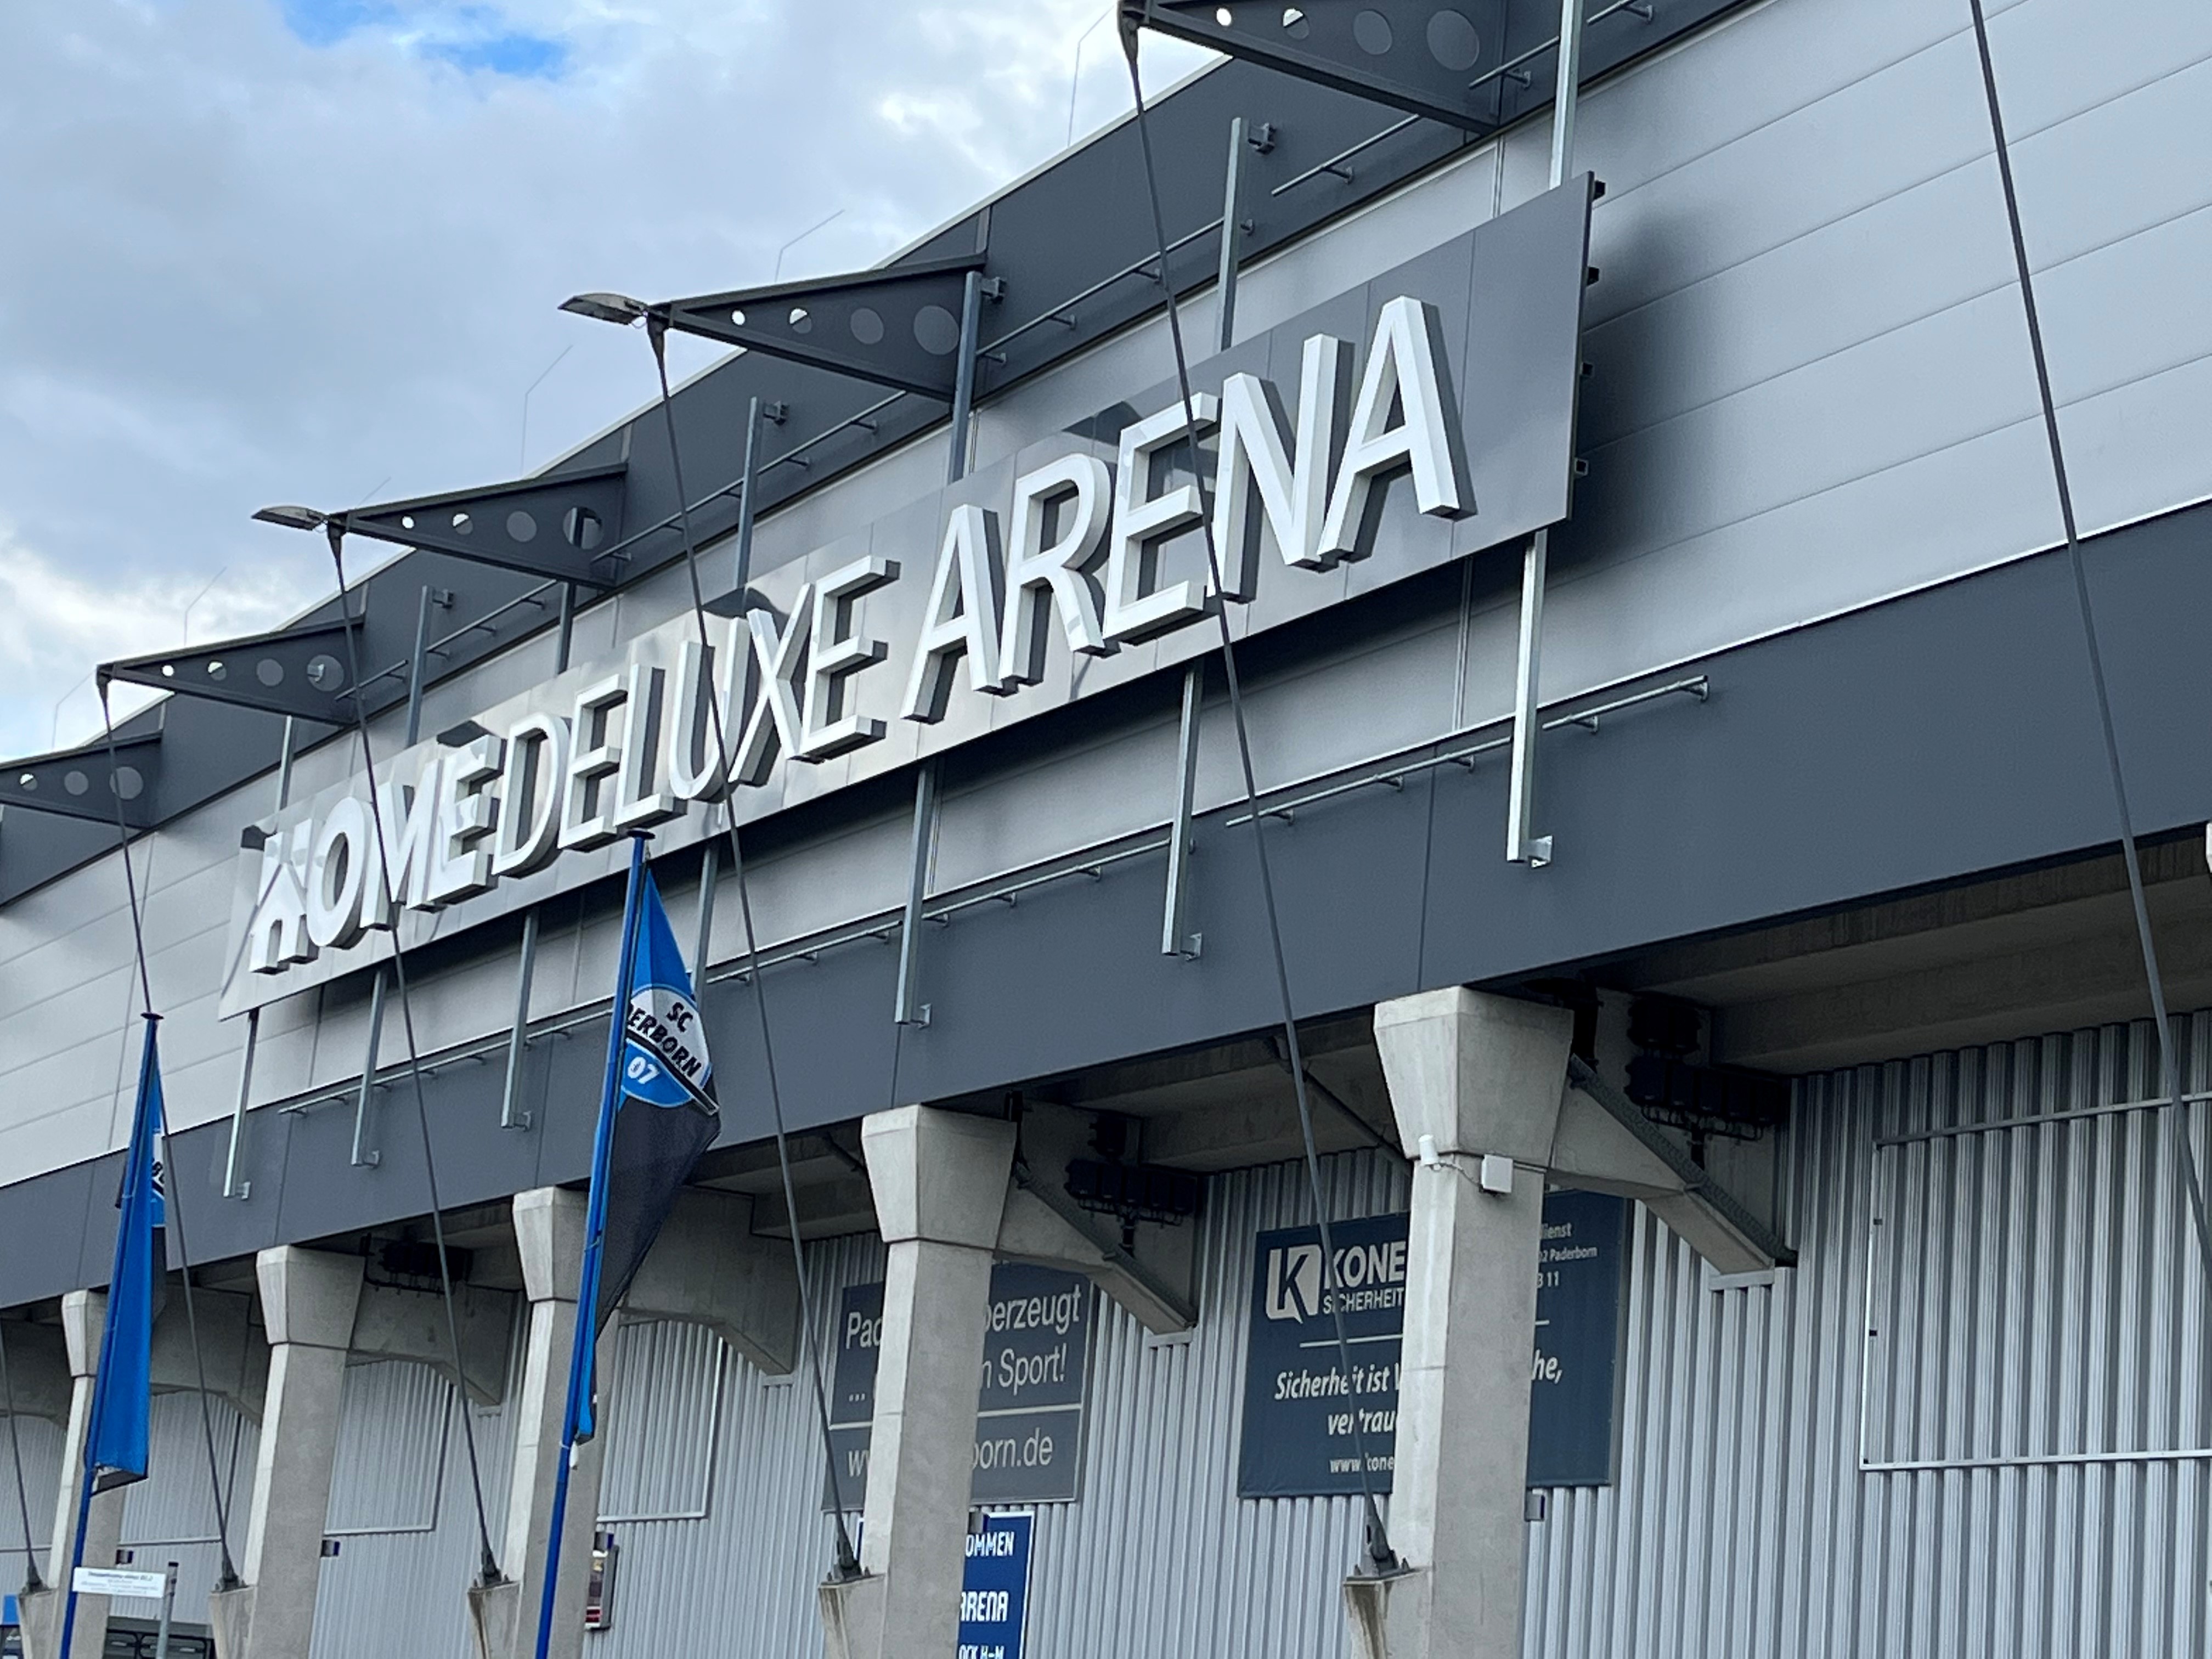 Home Deluxe Arena mit veränderter Optik - Stadionwelt